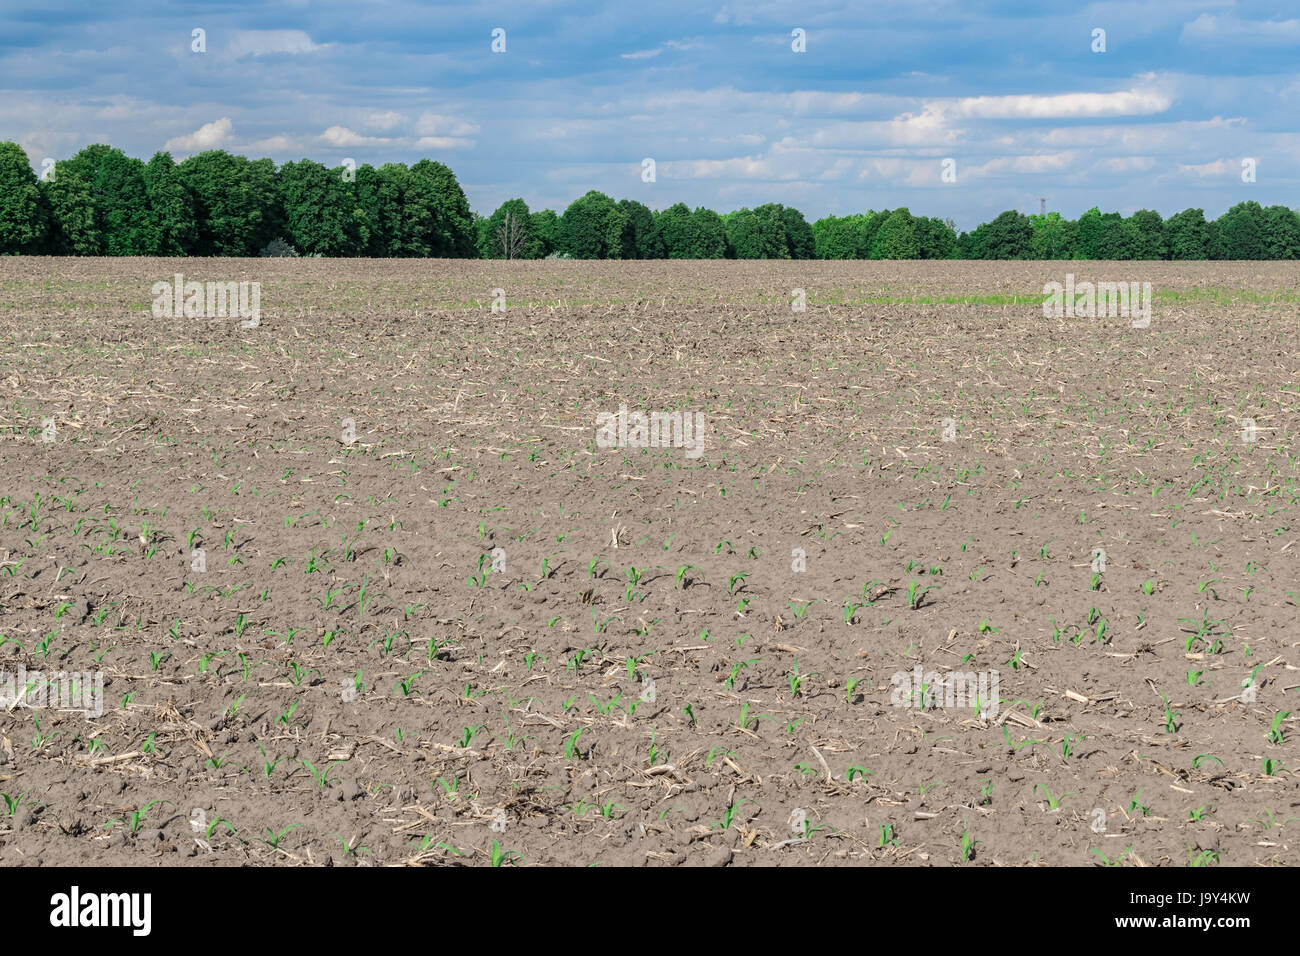 Seeded corn field in summer sunlit landscape Stock Photo